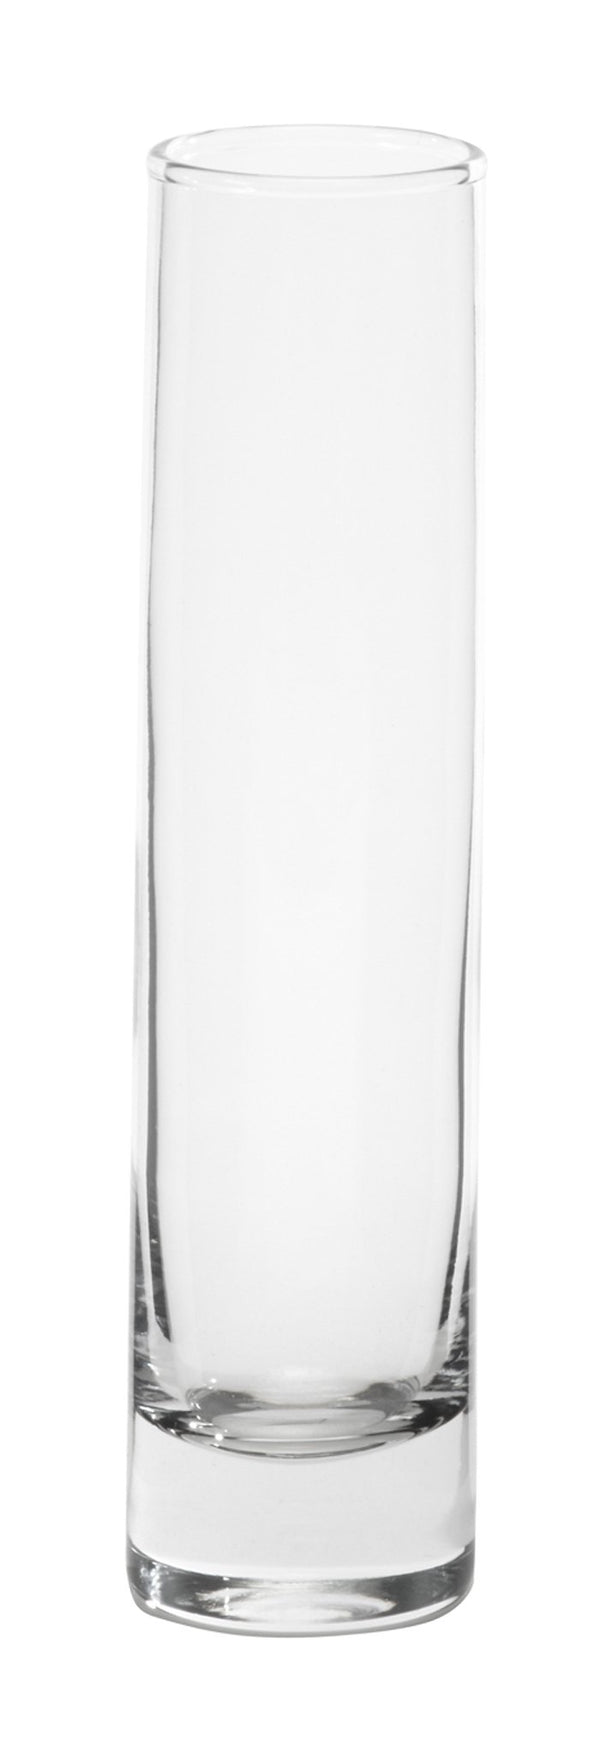 7-1/2" Cylinder Bud Vase - Oasis Floral Products NA